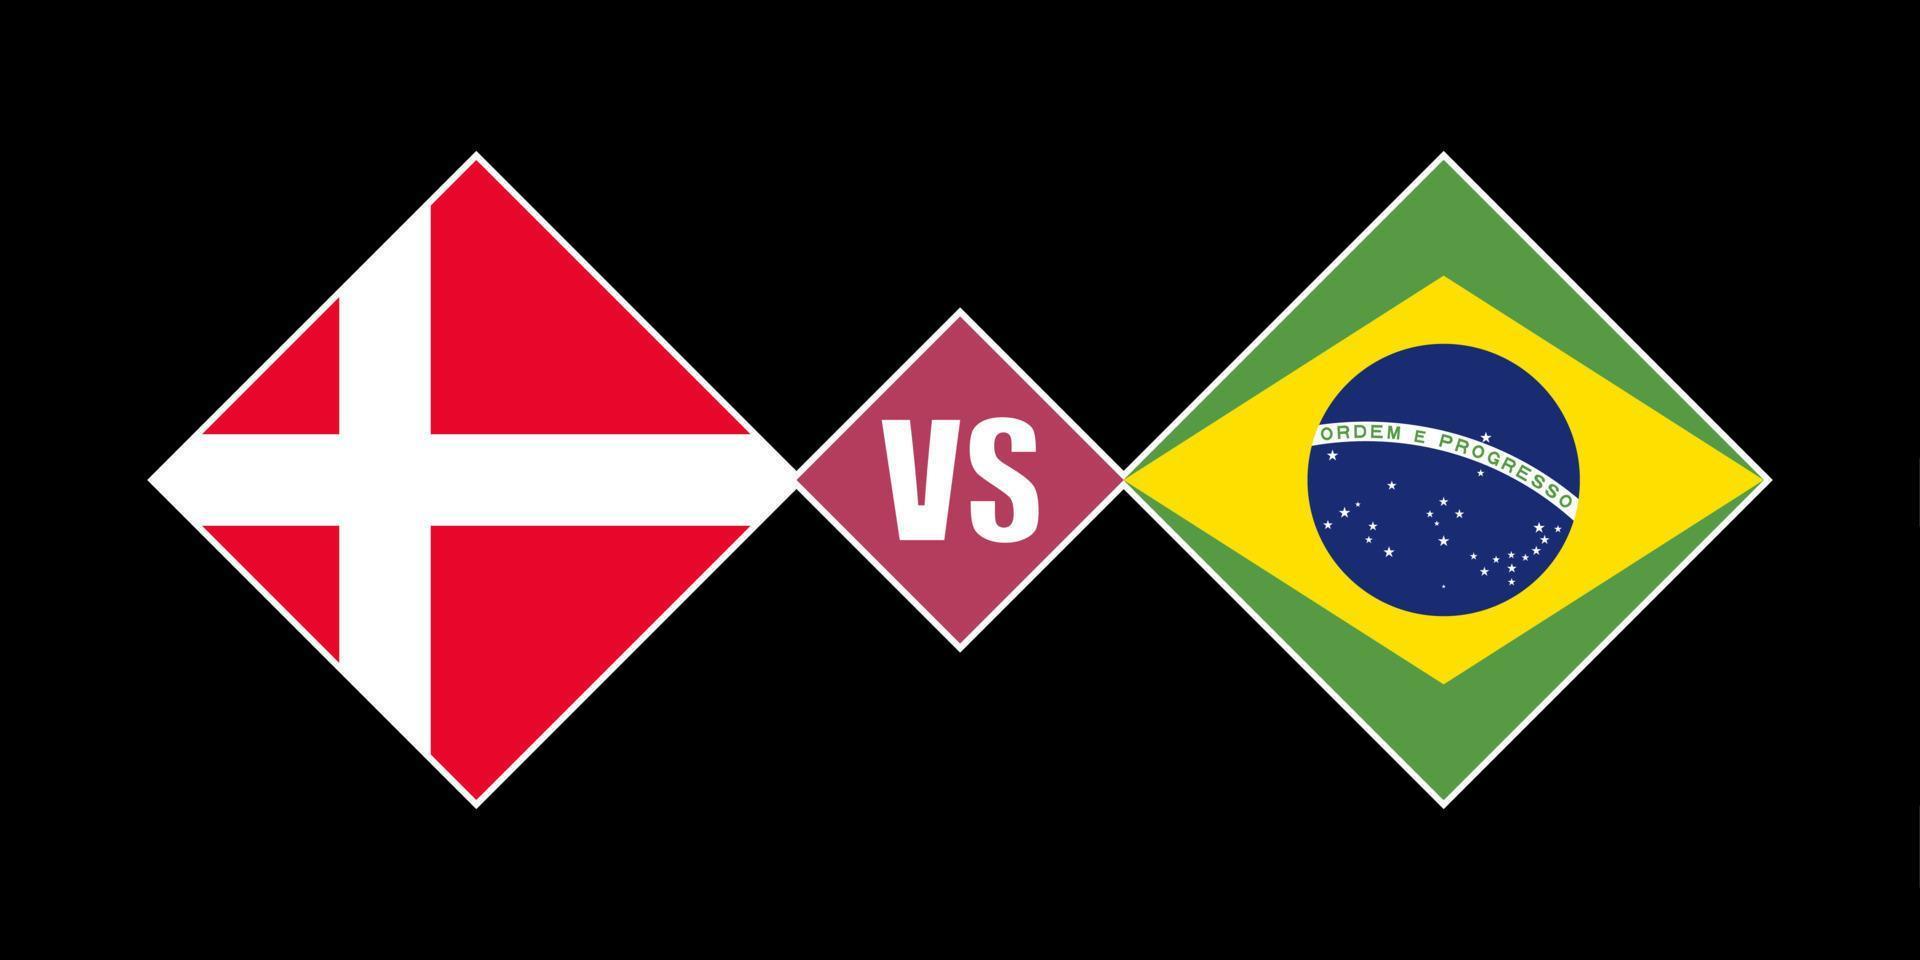 Denmark vs Brazil flag concept. Vector illustration.